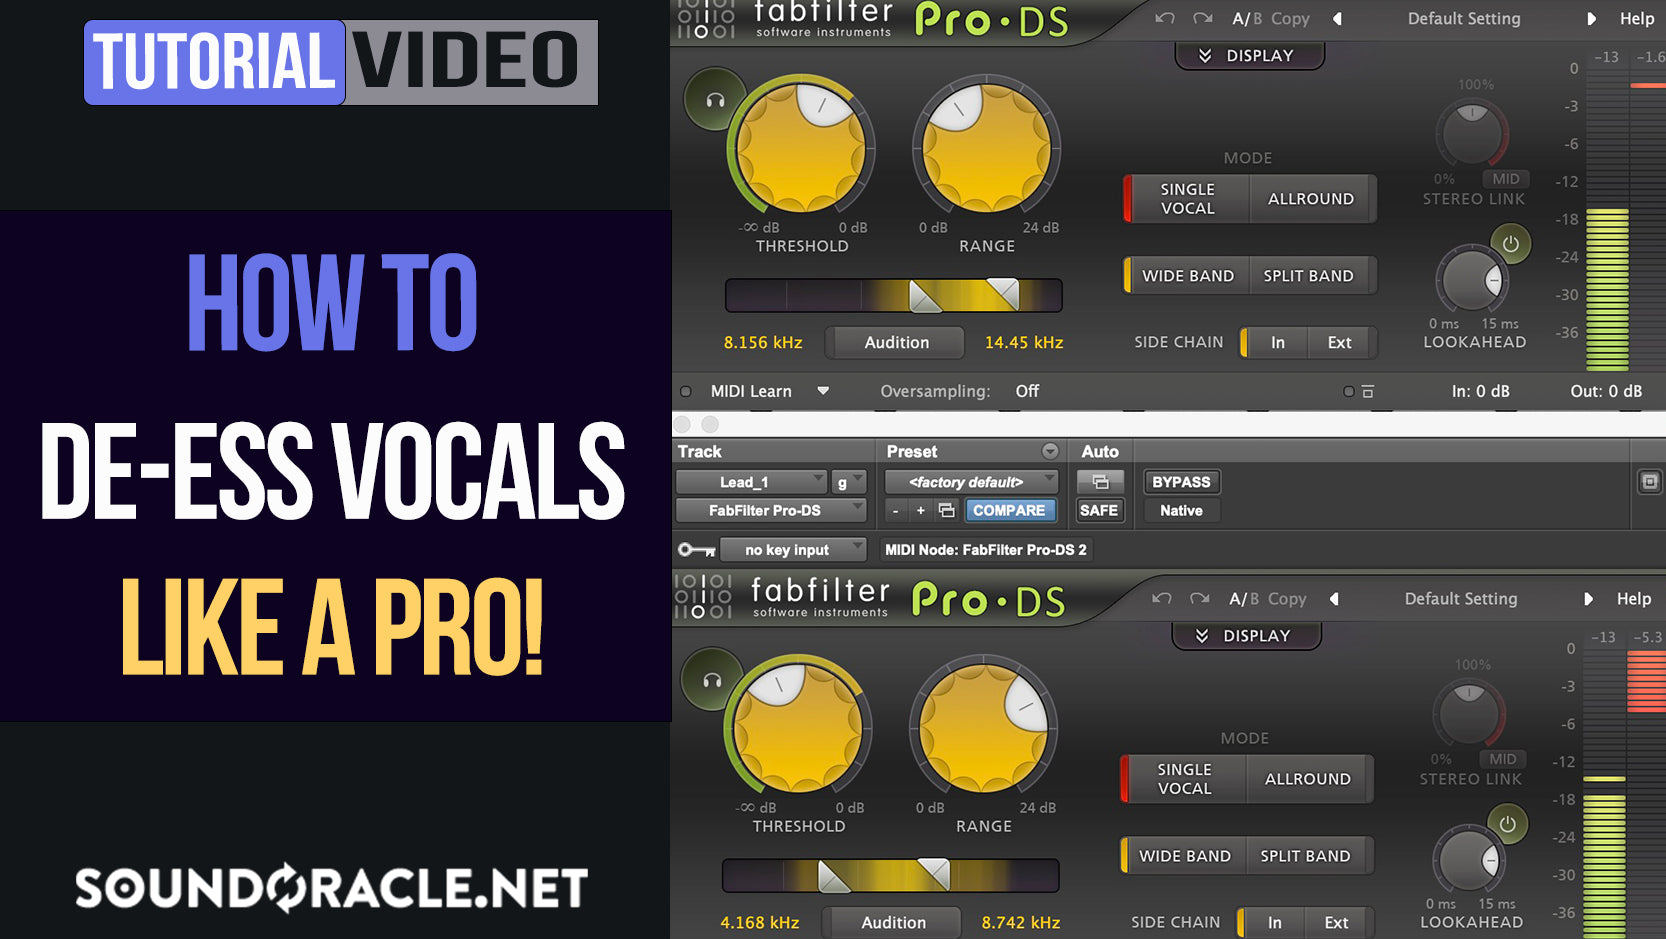 How To De-Ess Vocals Like A Pro!